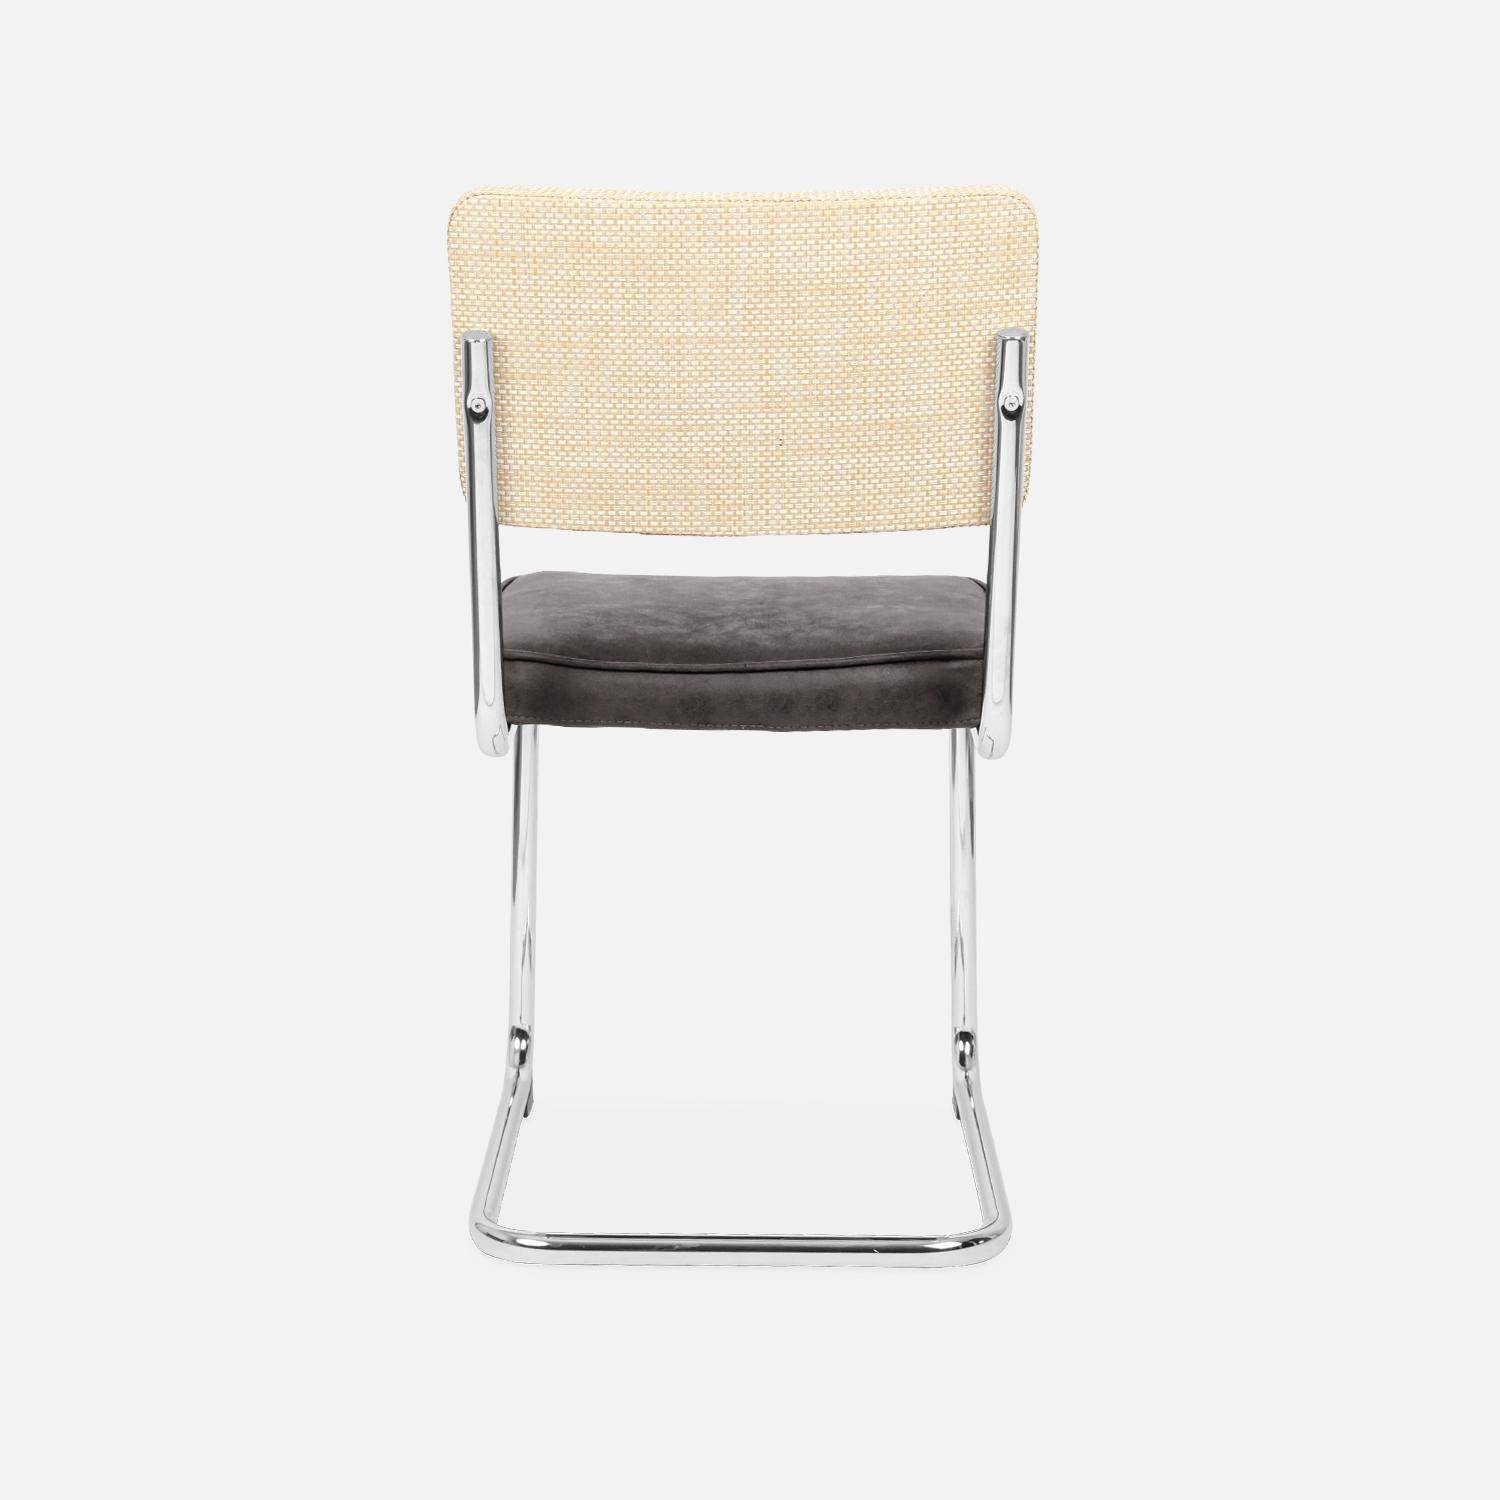 2 chaises cantilever - Maja - tissu marron foncé et résine effet rotin, 46 x 54,5 x 84,5cm   Photo7